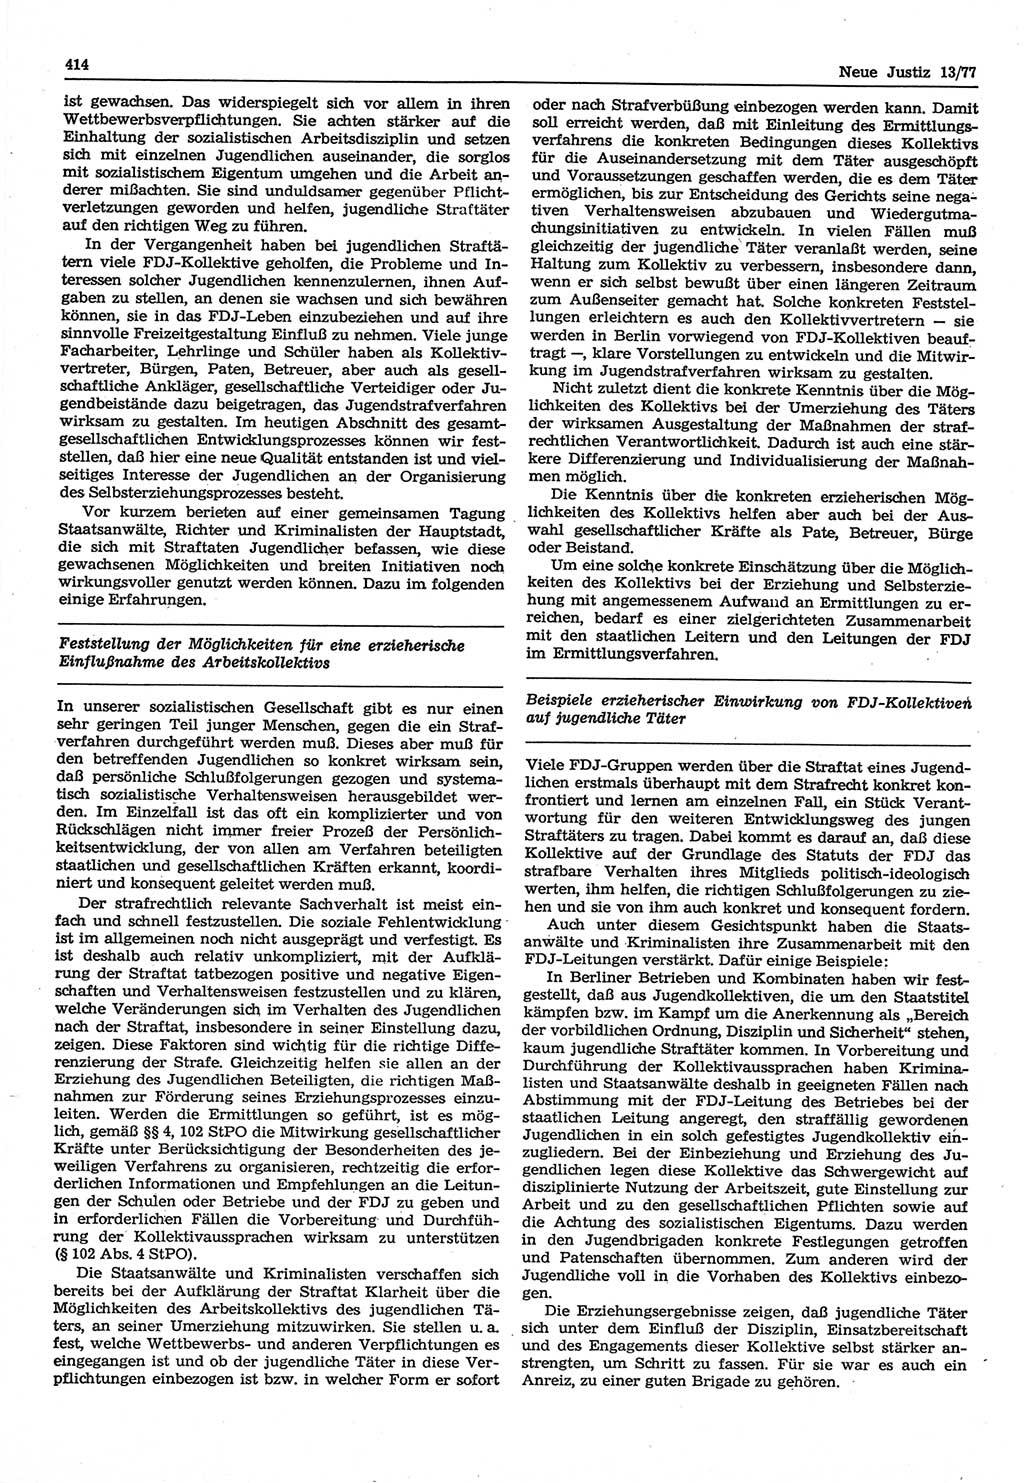 Neue Justiz (NJ), Zeitschrift für Recht und Rechtswissenschaft-Zeitschrift, sozialistisches Recht und Gesetzlichkeit, 31. Jahrgang 1977, Seite 414 (NJ DDR 1977, S. 414)